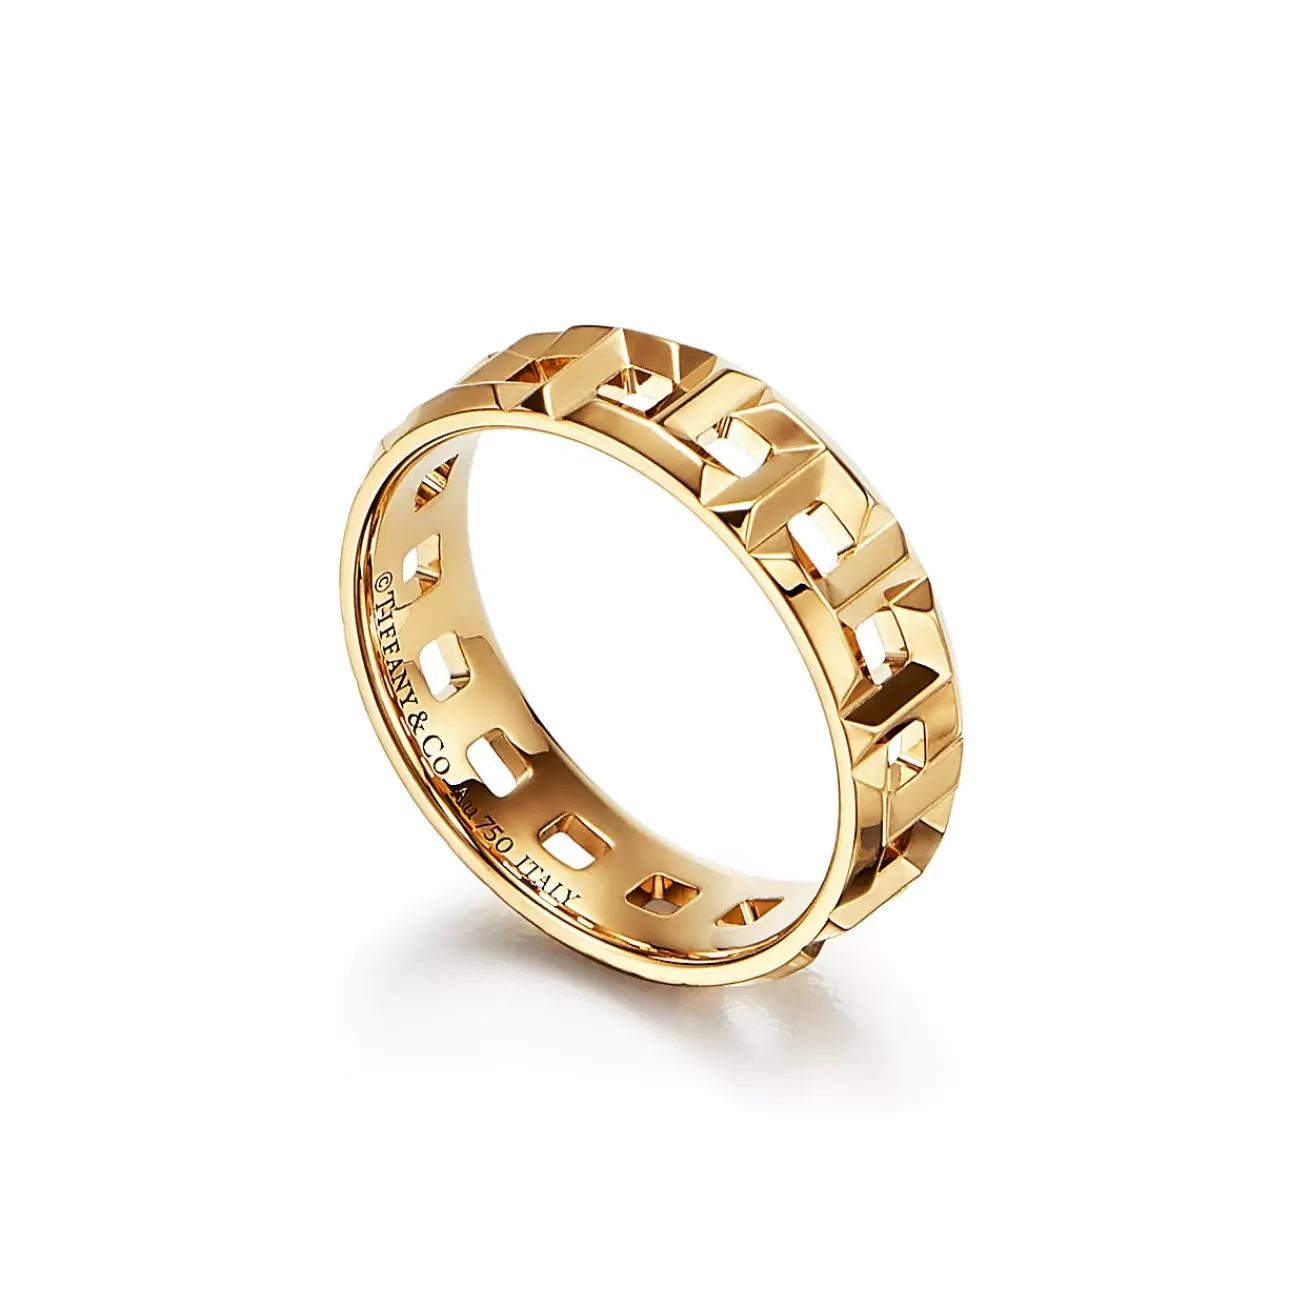 Tiffany & Co. Tiffany T True wide ring in 18k gold, 5.5 mm wide. | ^Women Rings | Men's Jewelry